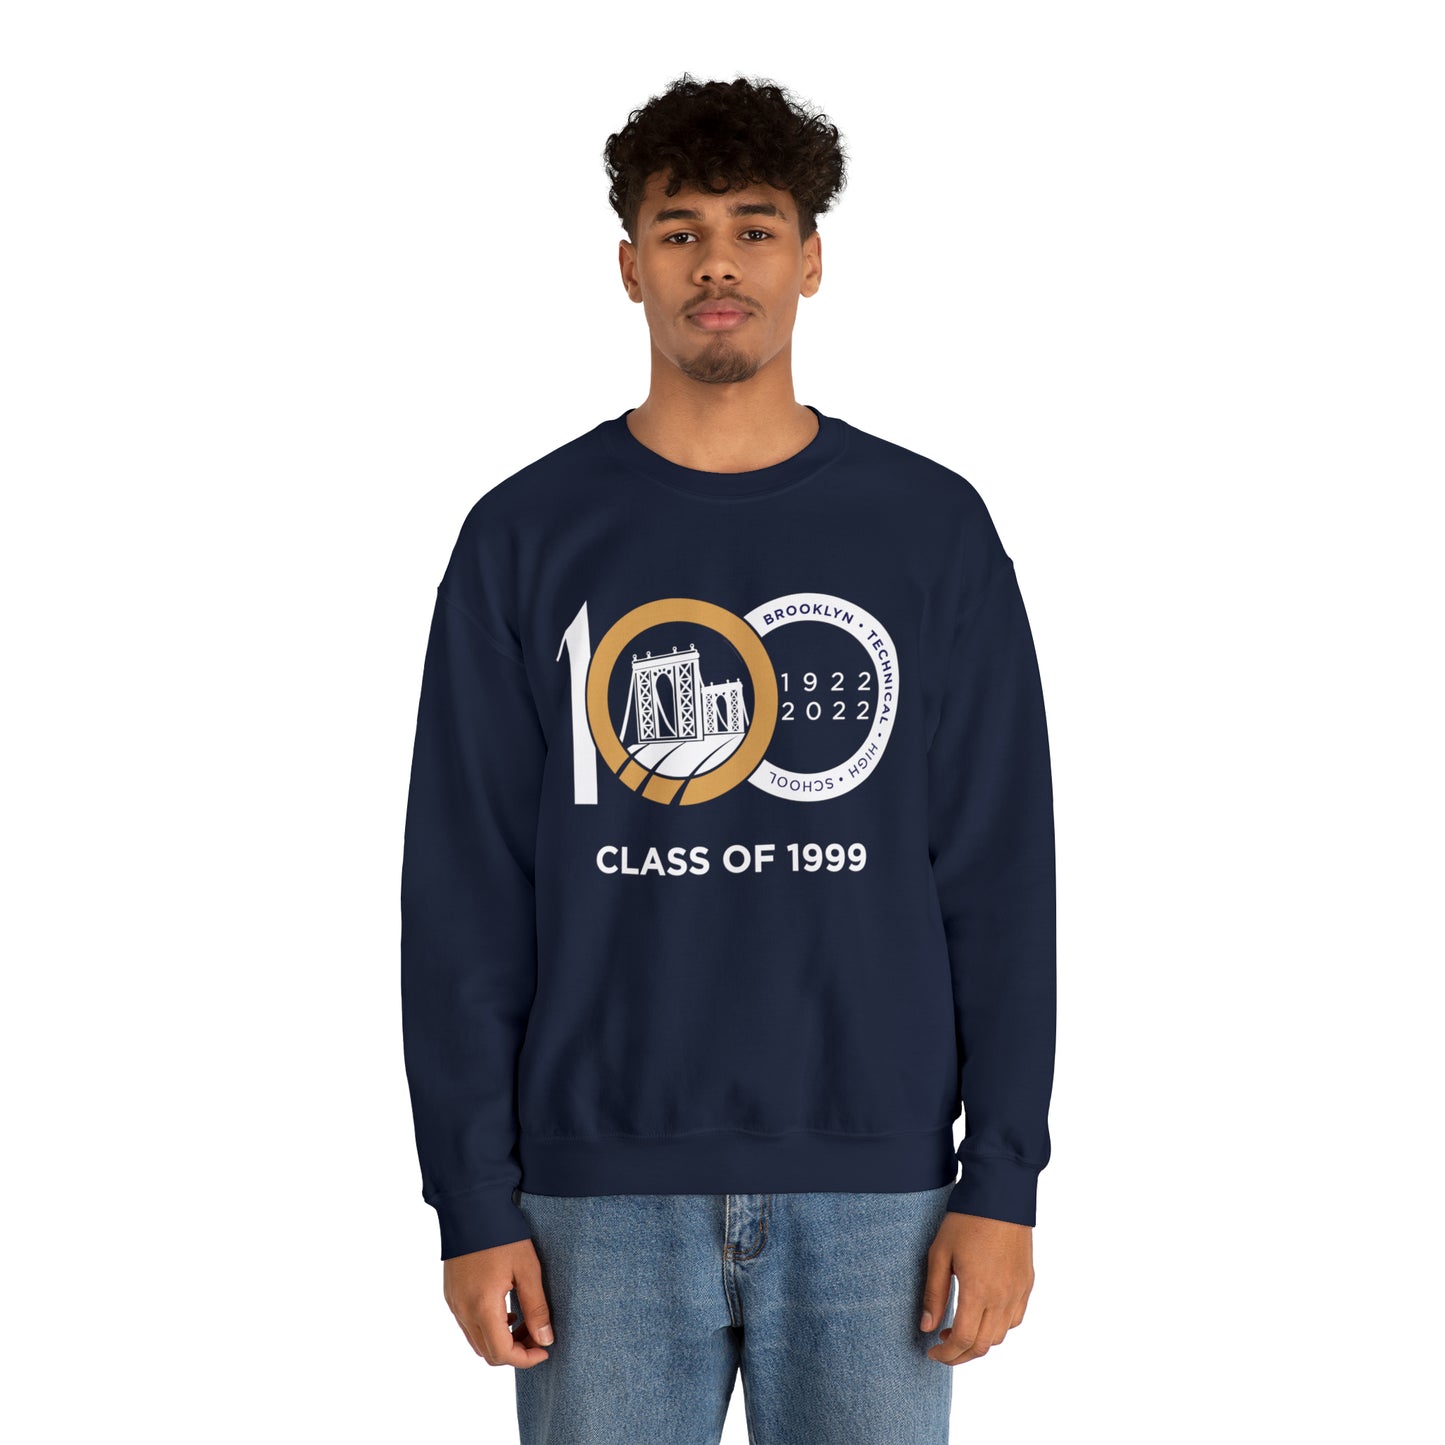 Centennial - Men's Heavy Blend Crewneck Sweatshirt - Class Of 1999